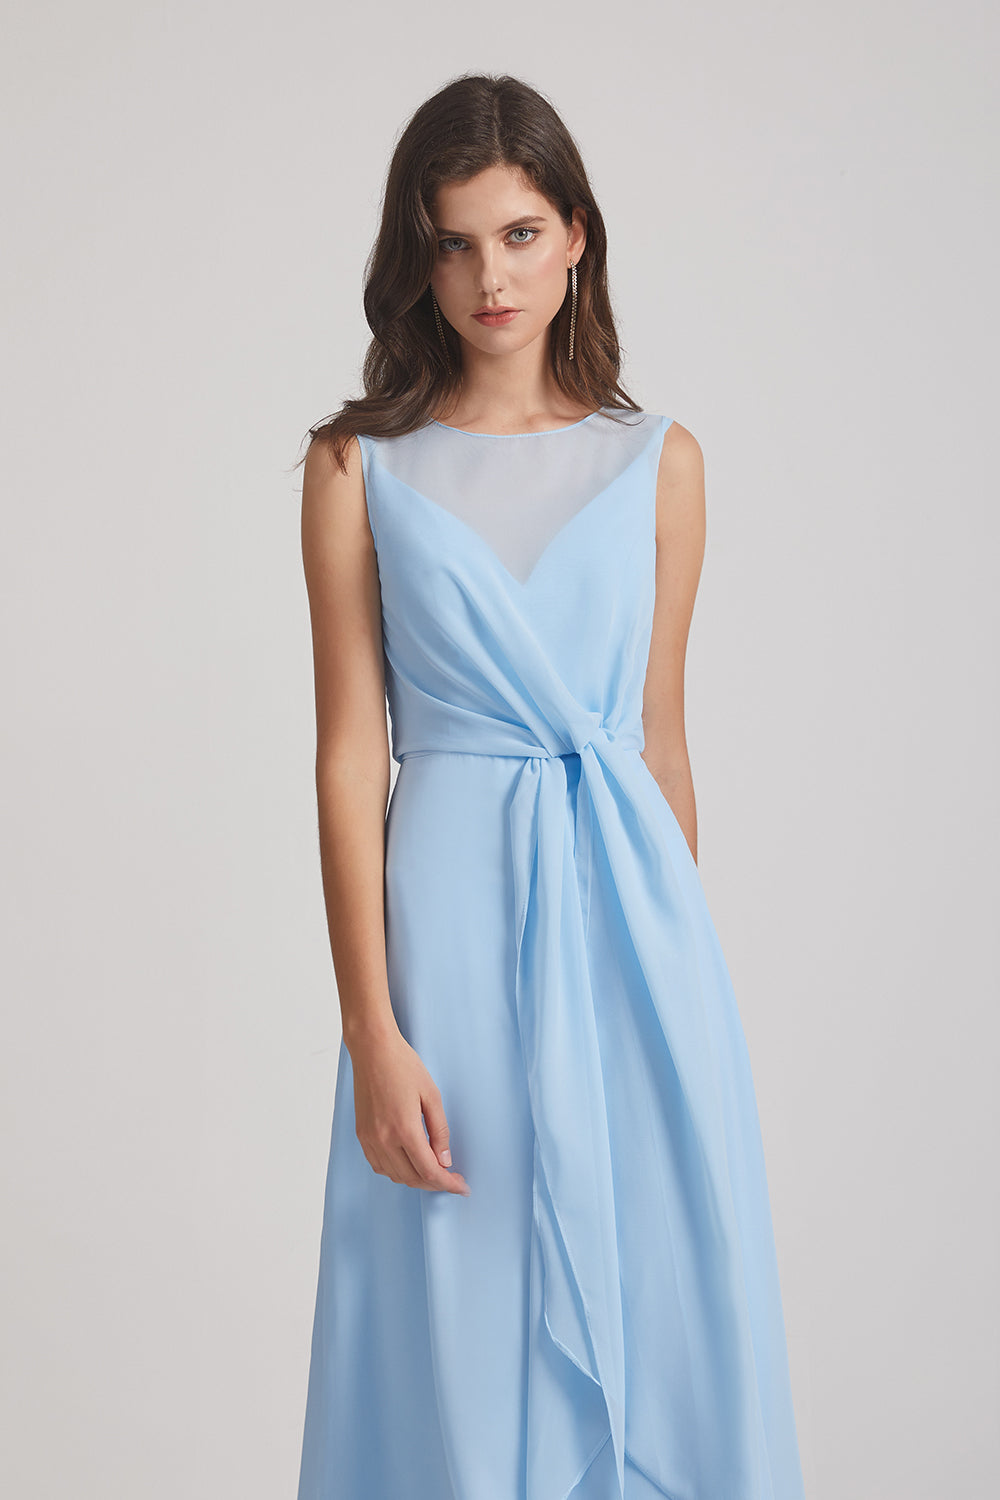 light blue sleeveless bridesmaids gown